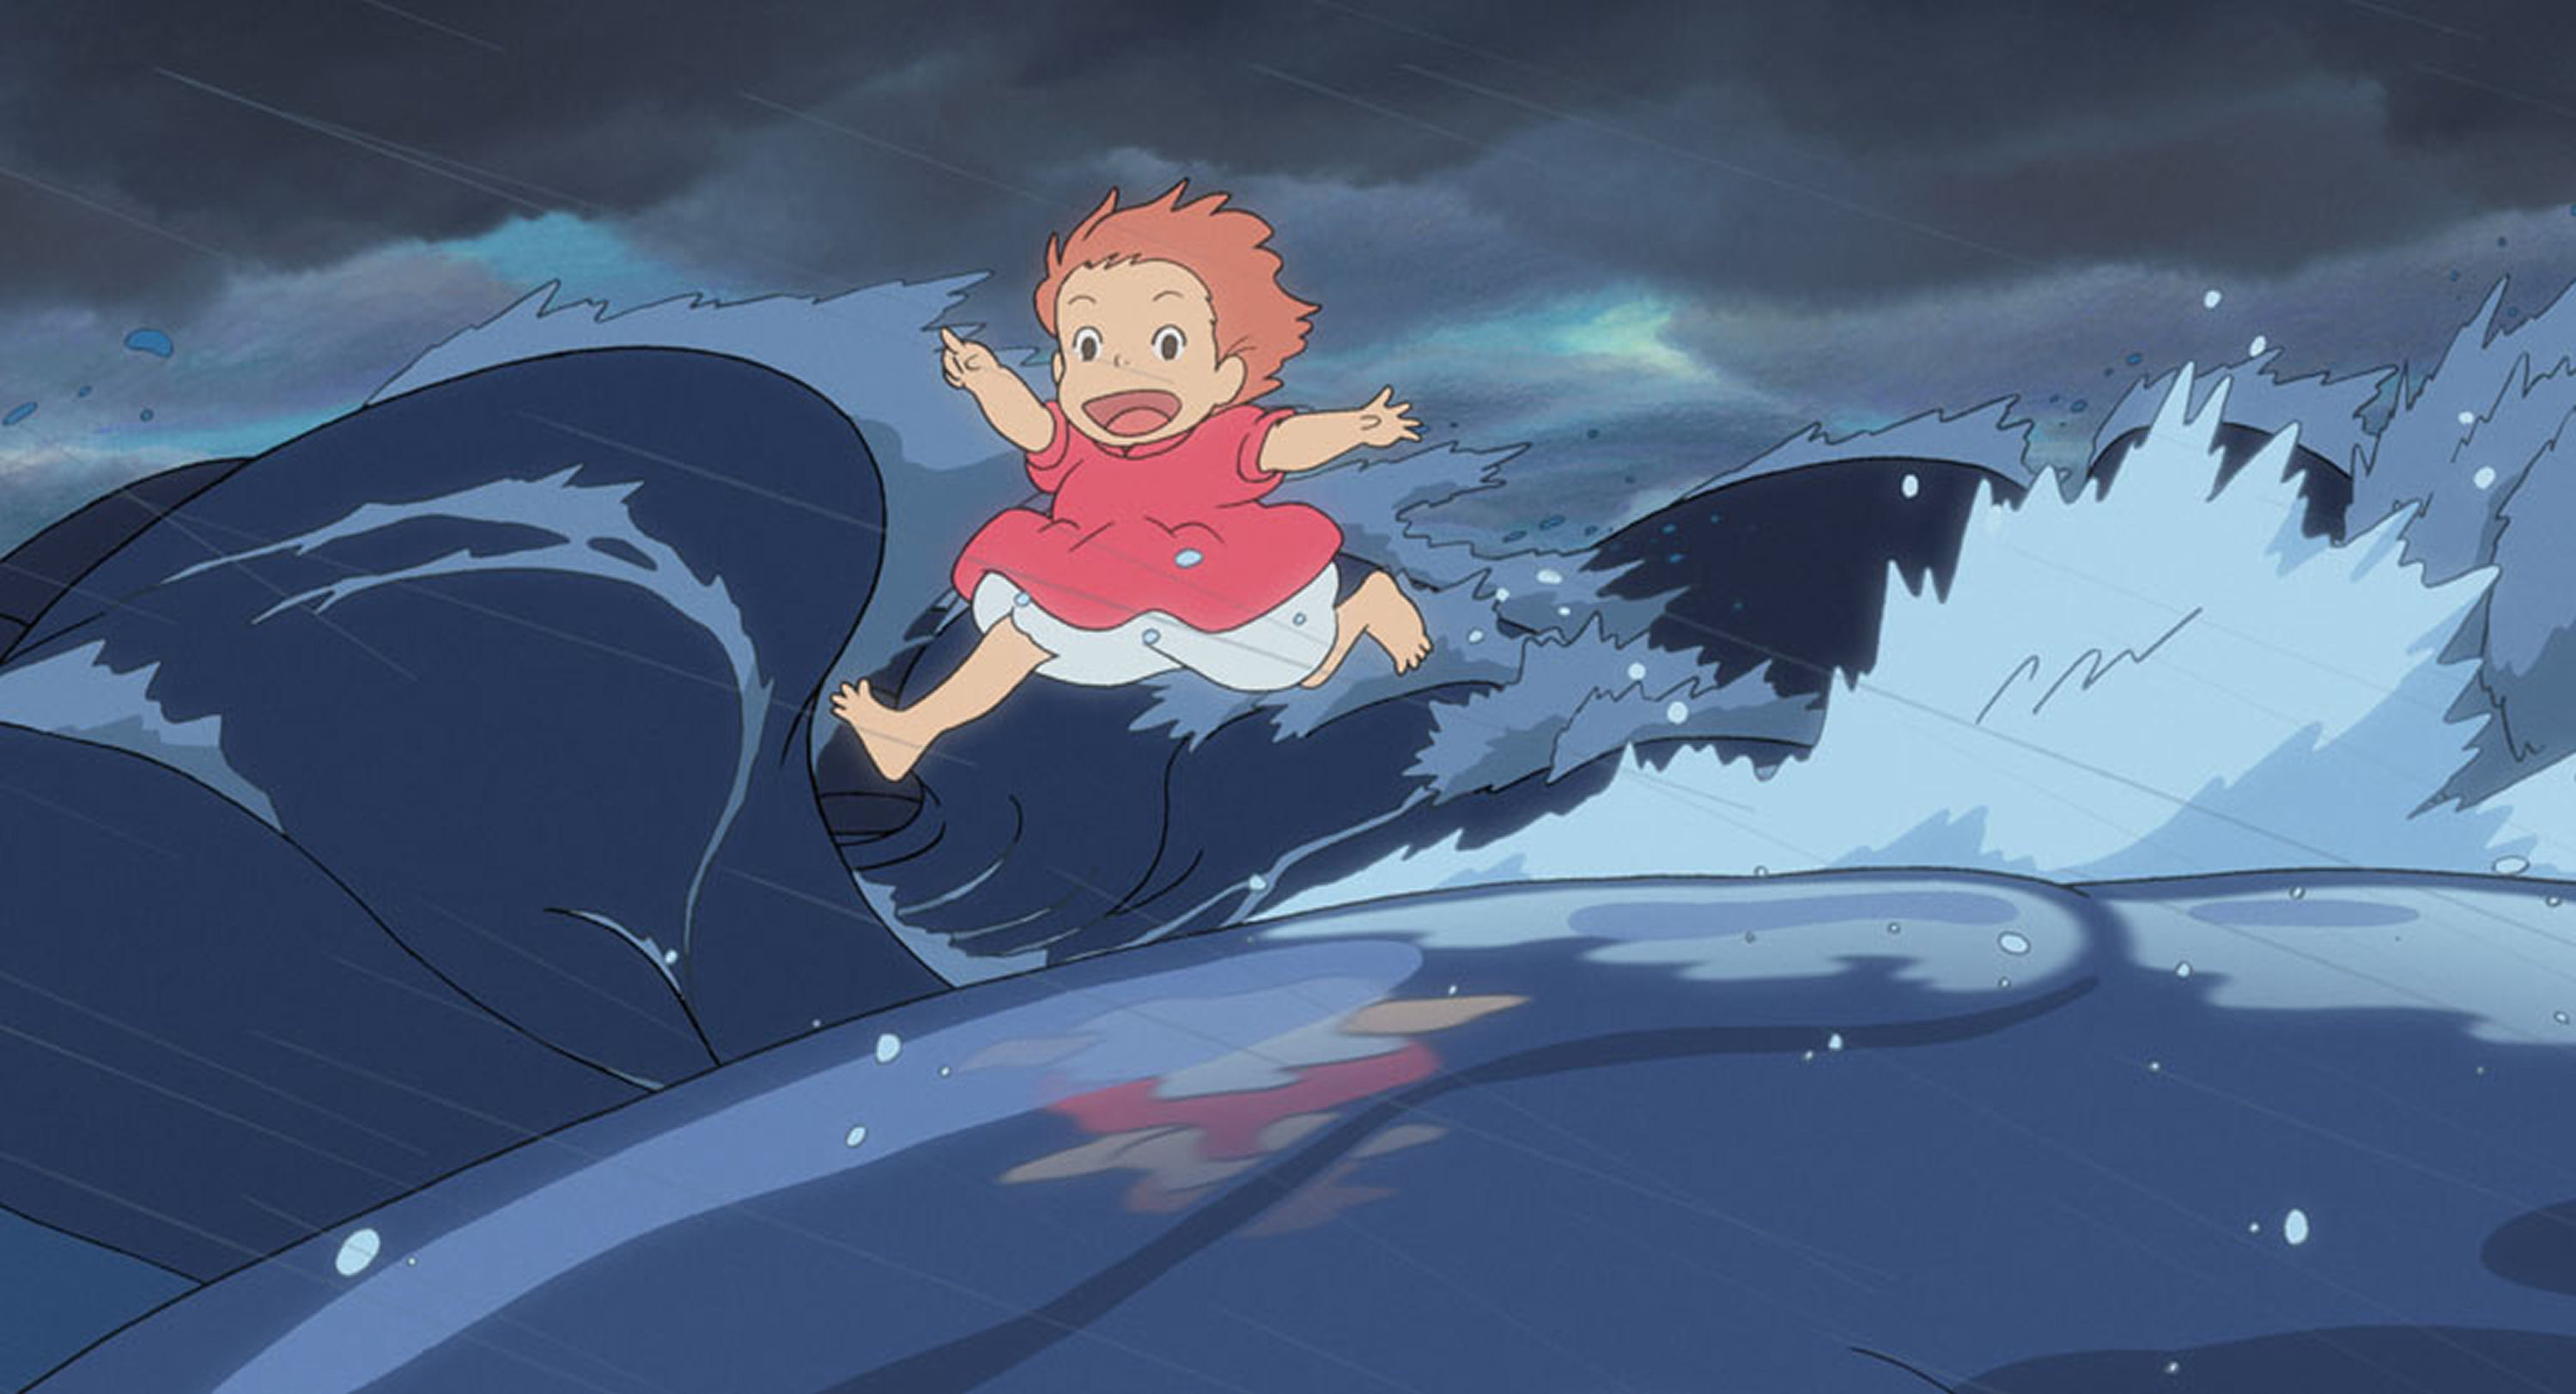 Viborg Animationsfestival 2017 til oktober har en god del anime arrangementer